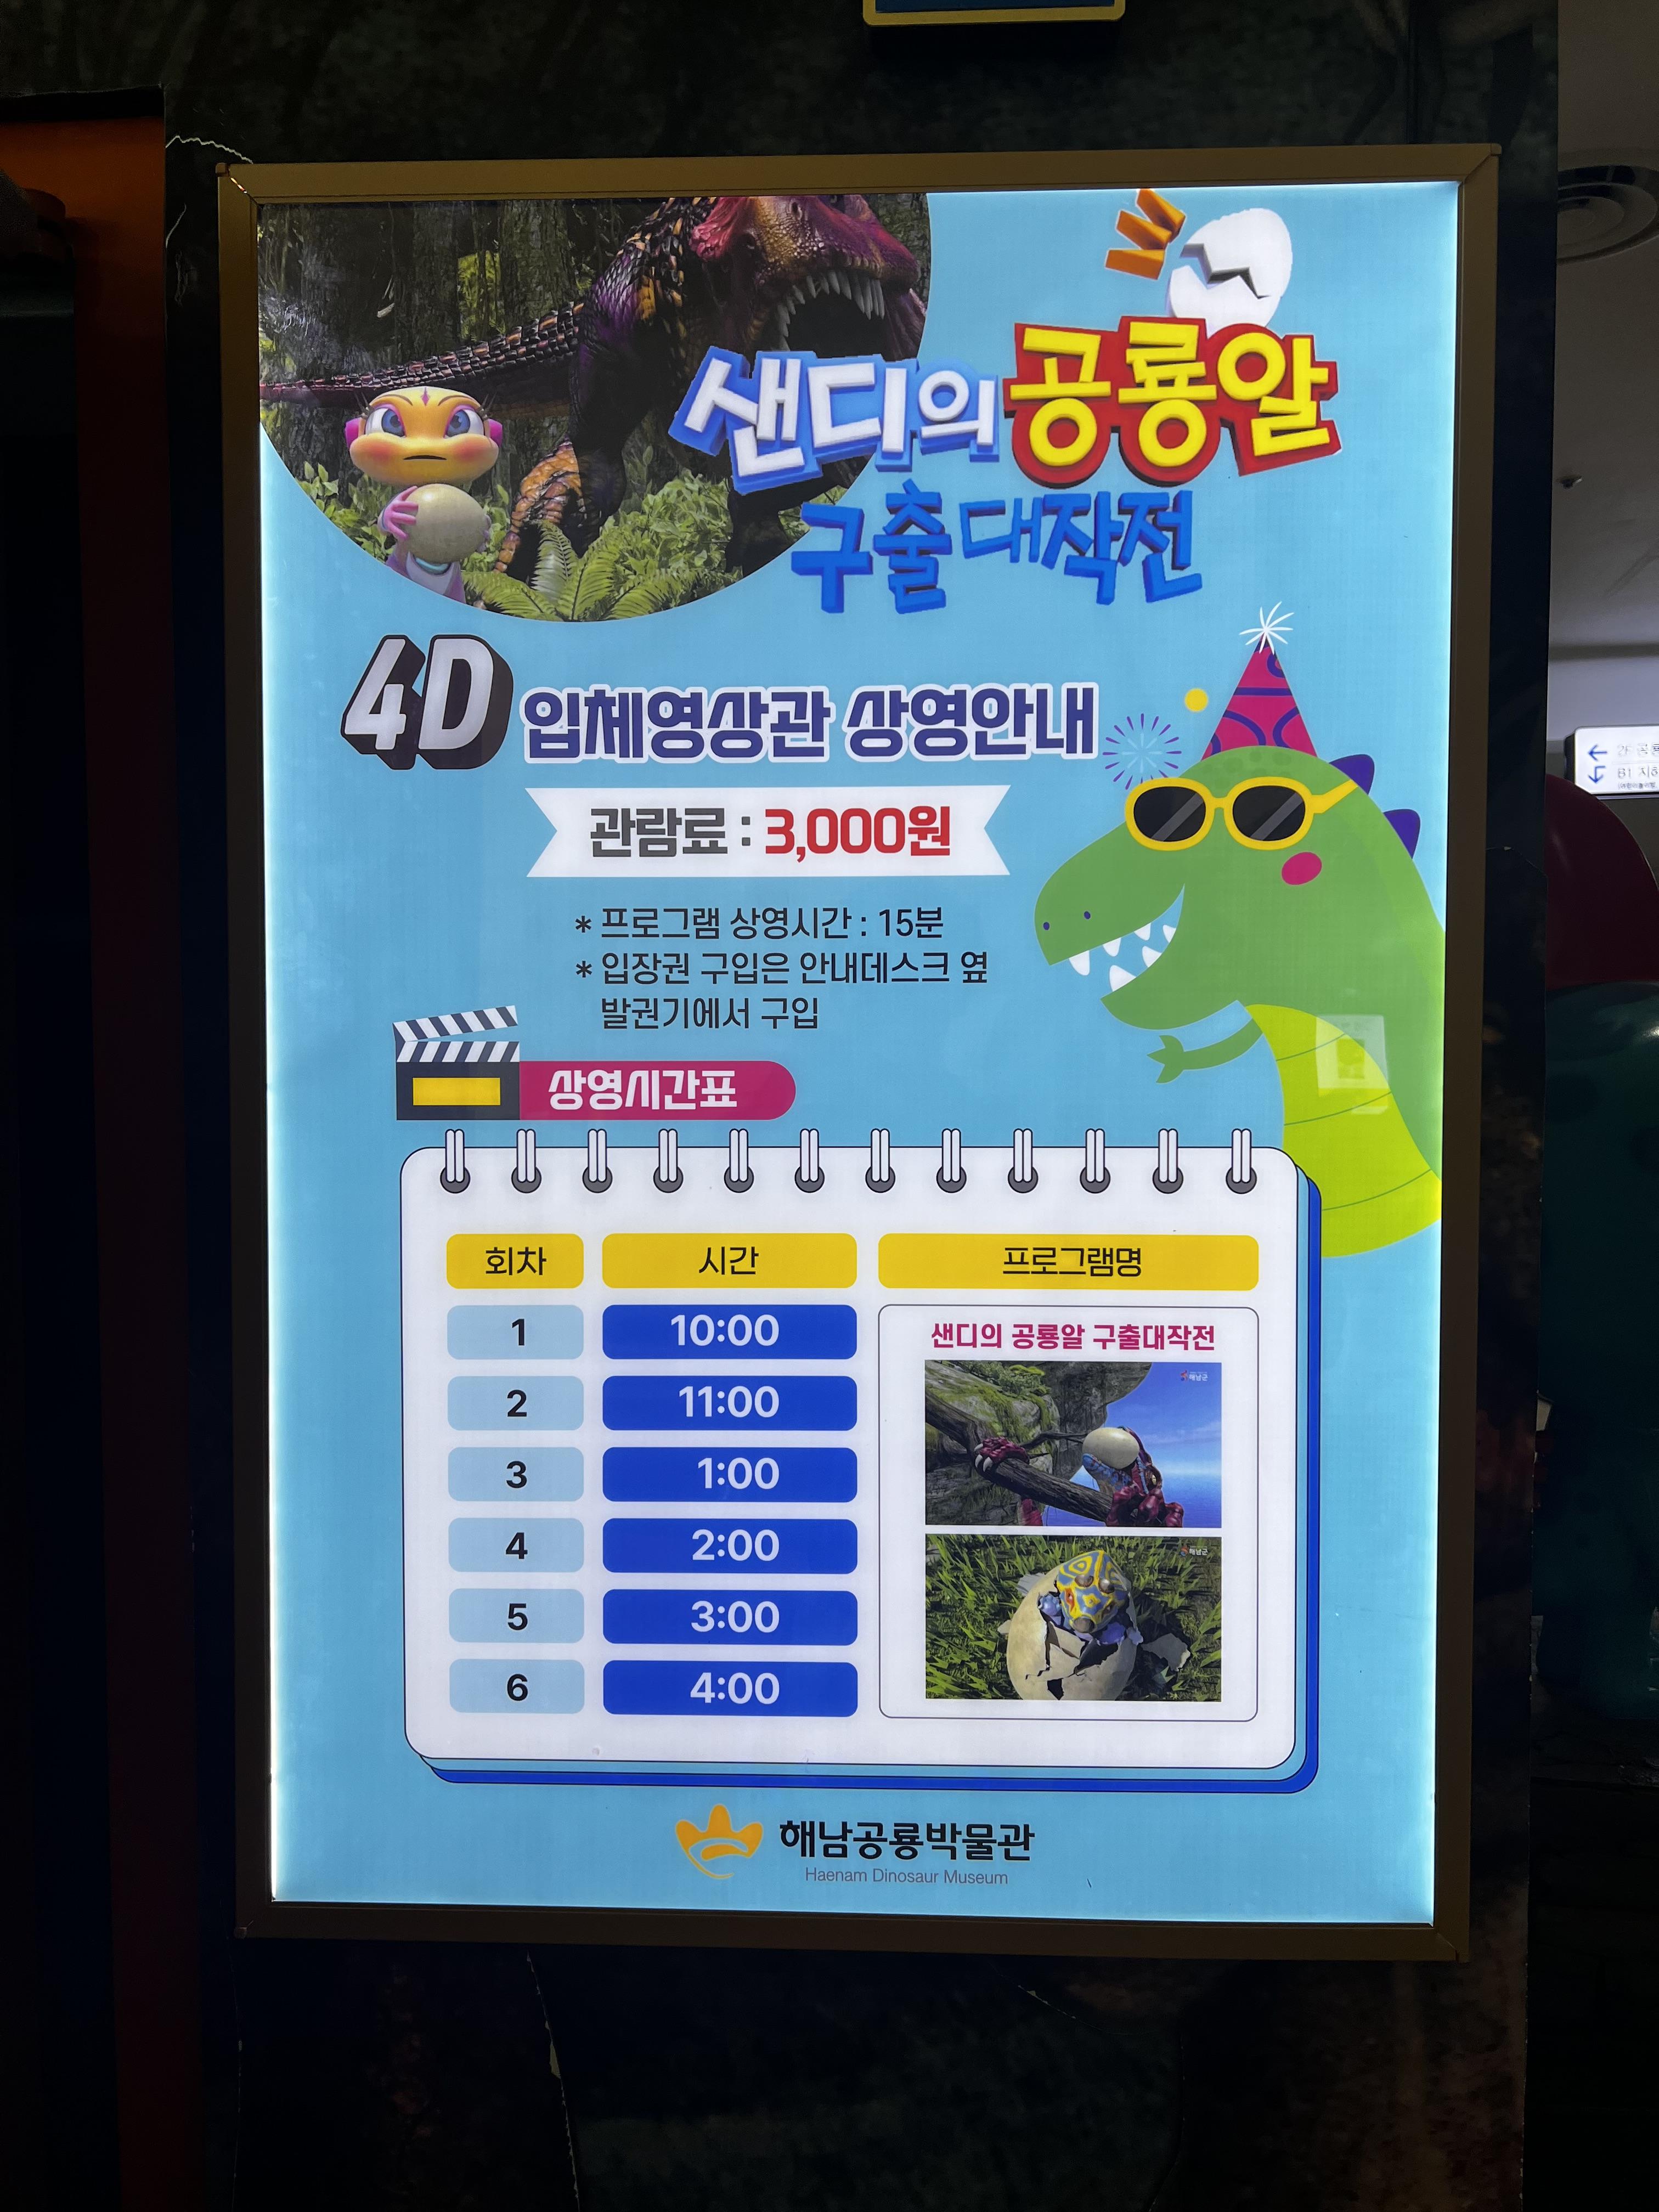 민수랜드-해남공룡박물관 4D상영시간표